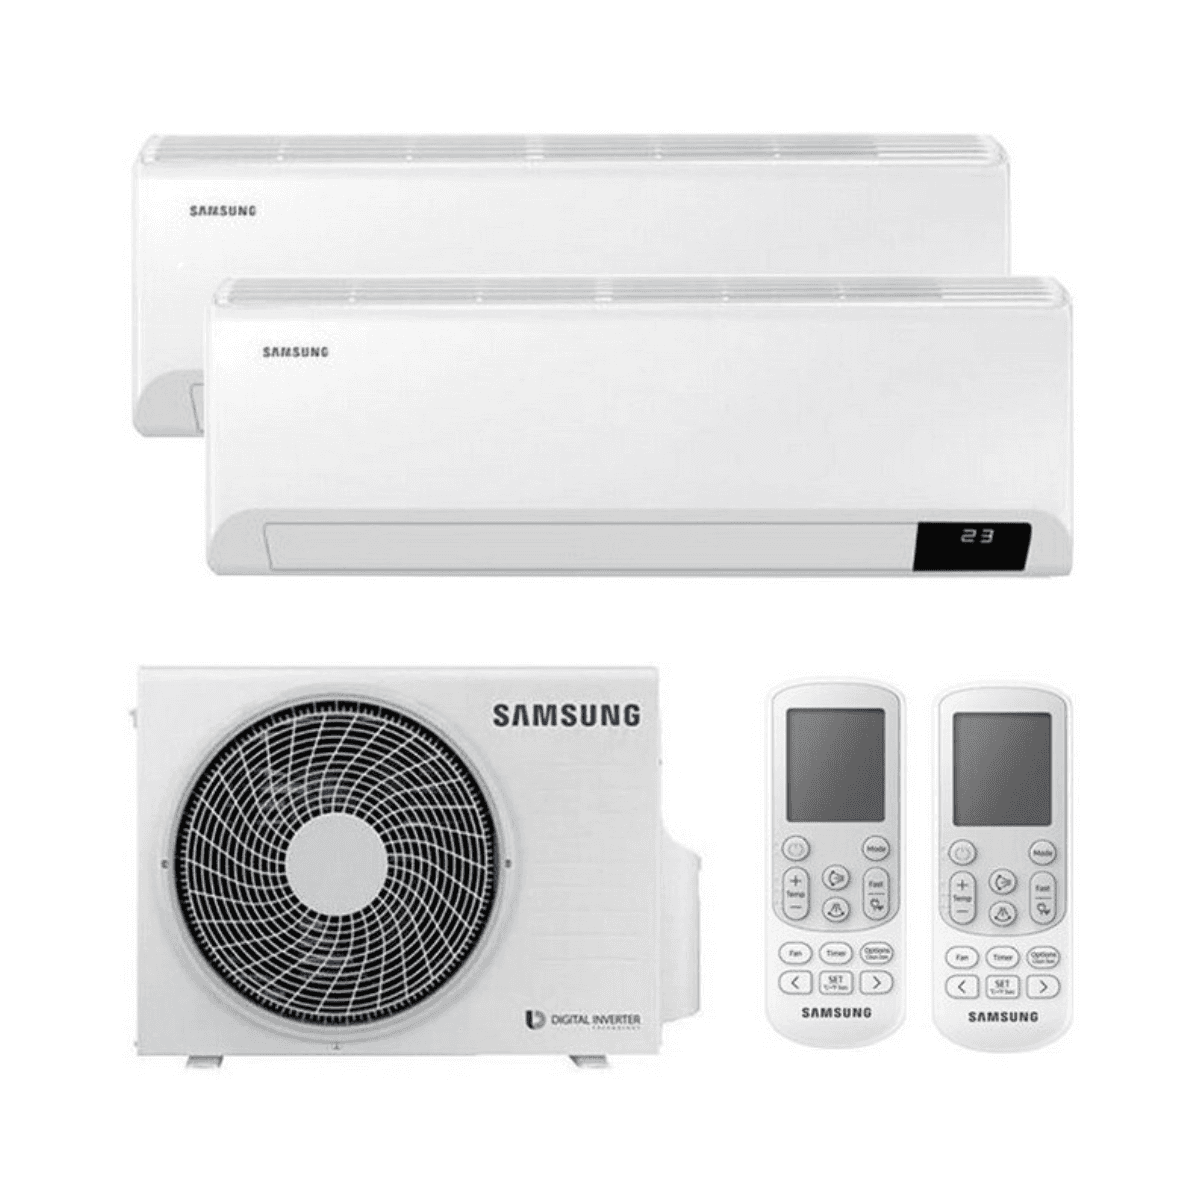 Ar condicionado fixo 2x1 Samsung Wind Free Comfort AR09 + AR12 9000 BTU + 12000 BTU com referência KITSAMWINDFREE09+18 da marca SAMSUNG